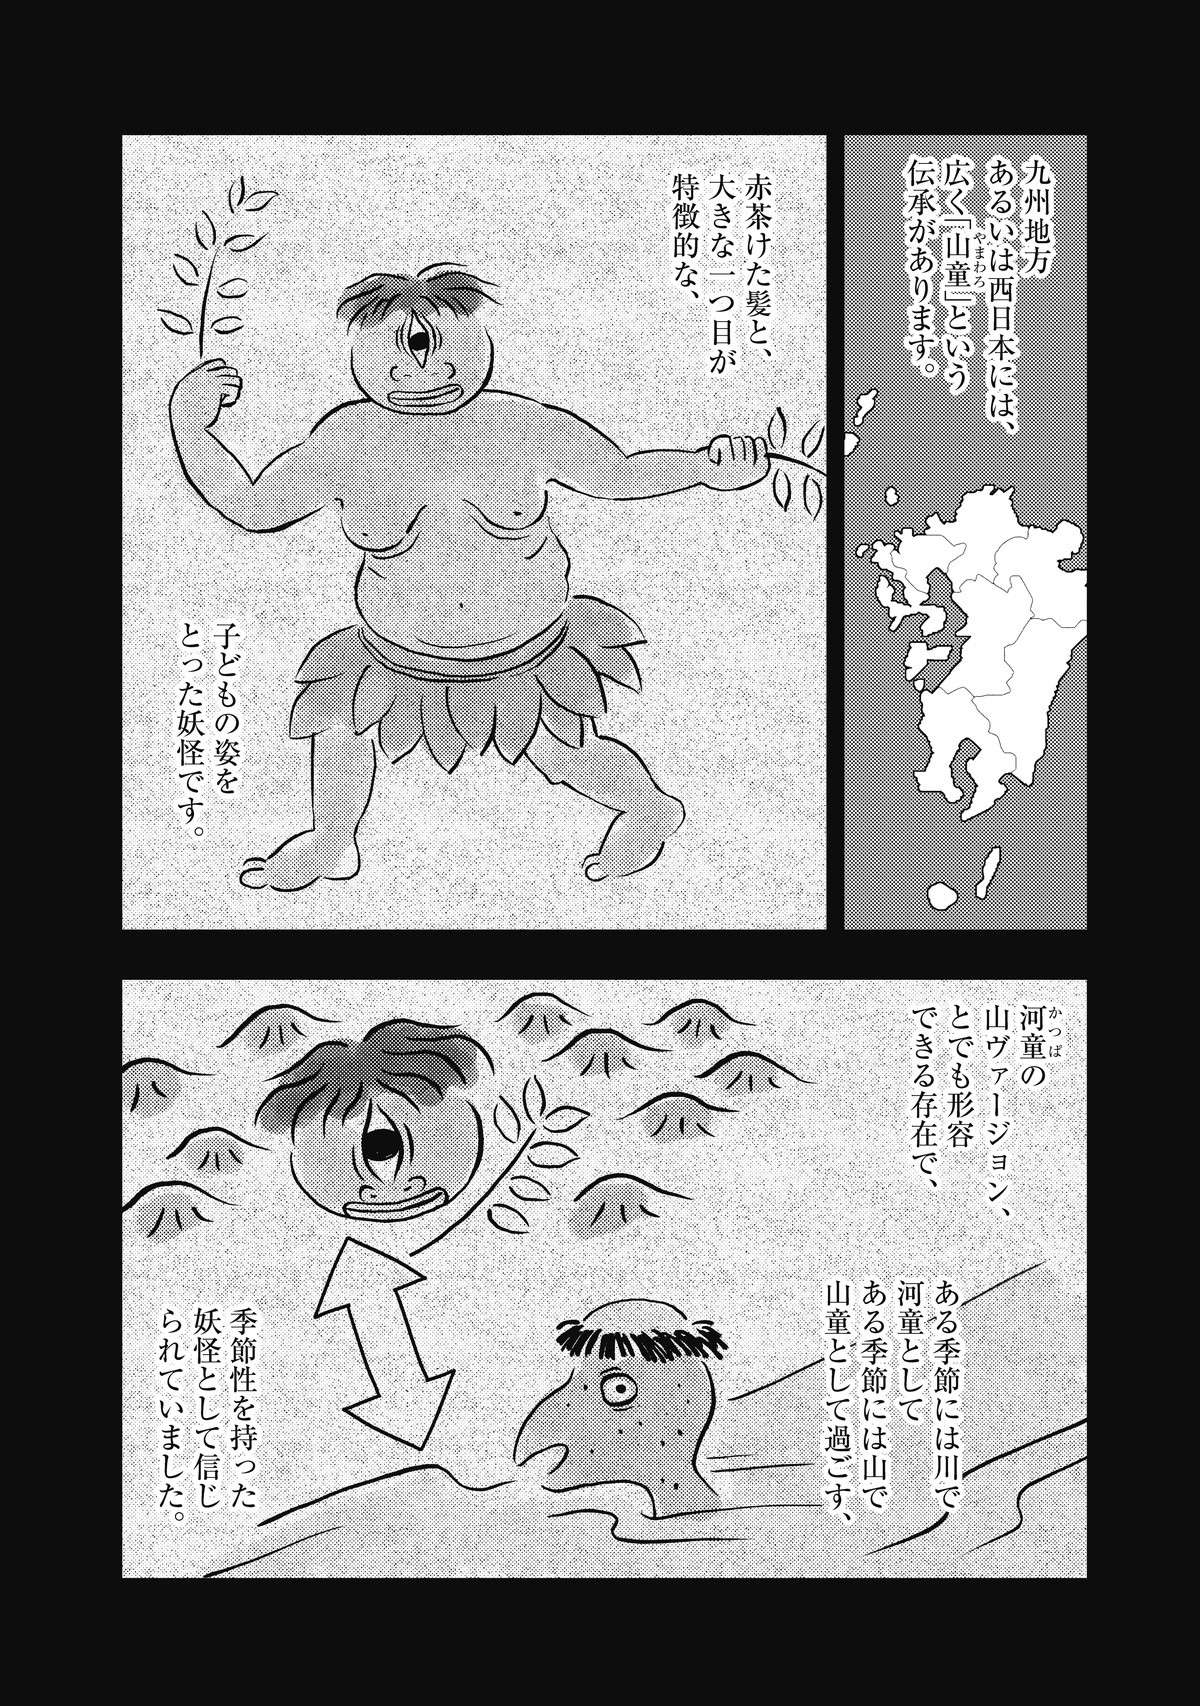 「山童」って知っていますか？ 九州地方や西日本の伝承で、それを友人に話したら...／コワい話は≠くだけで。 7.jpg